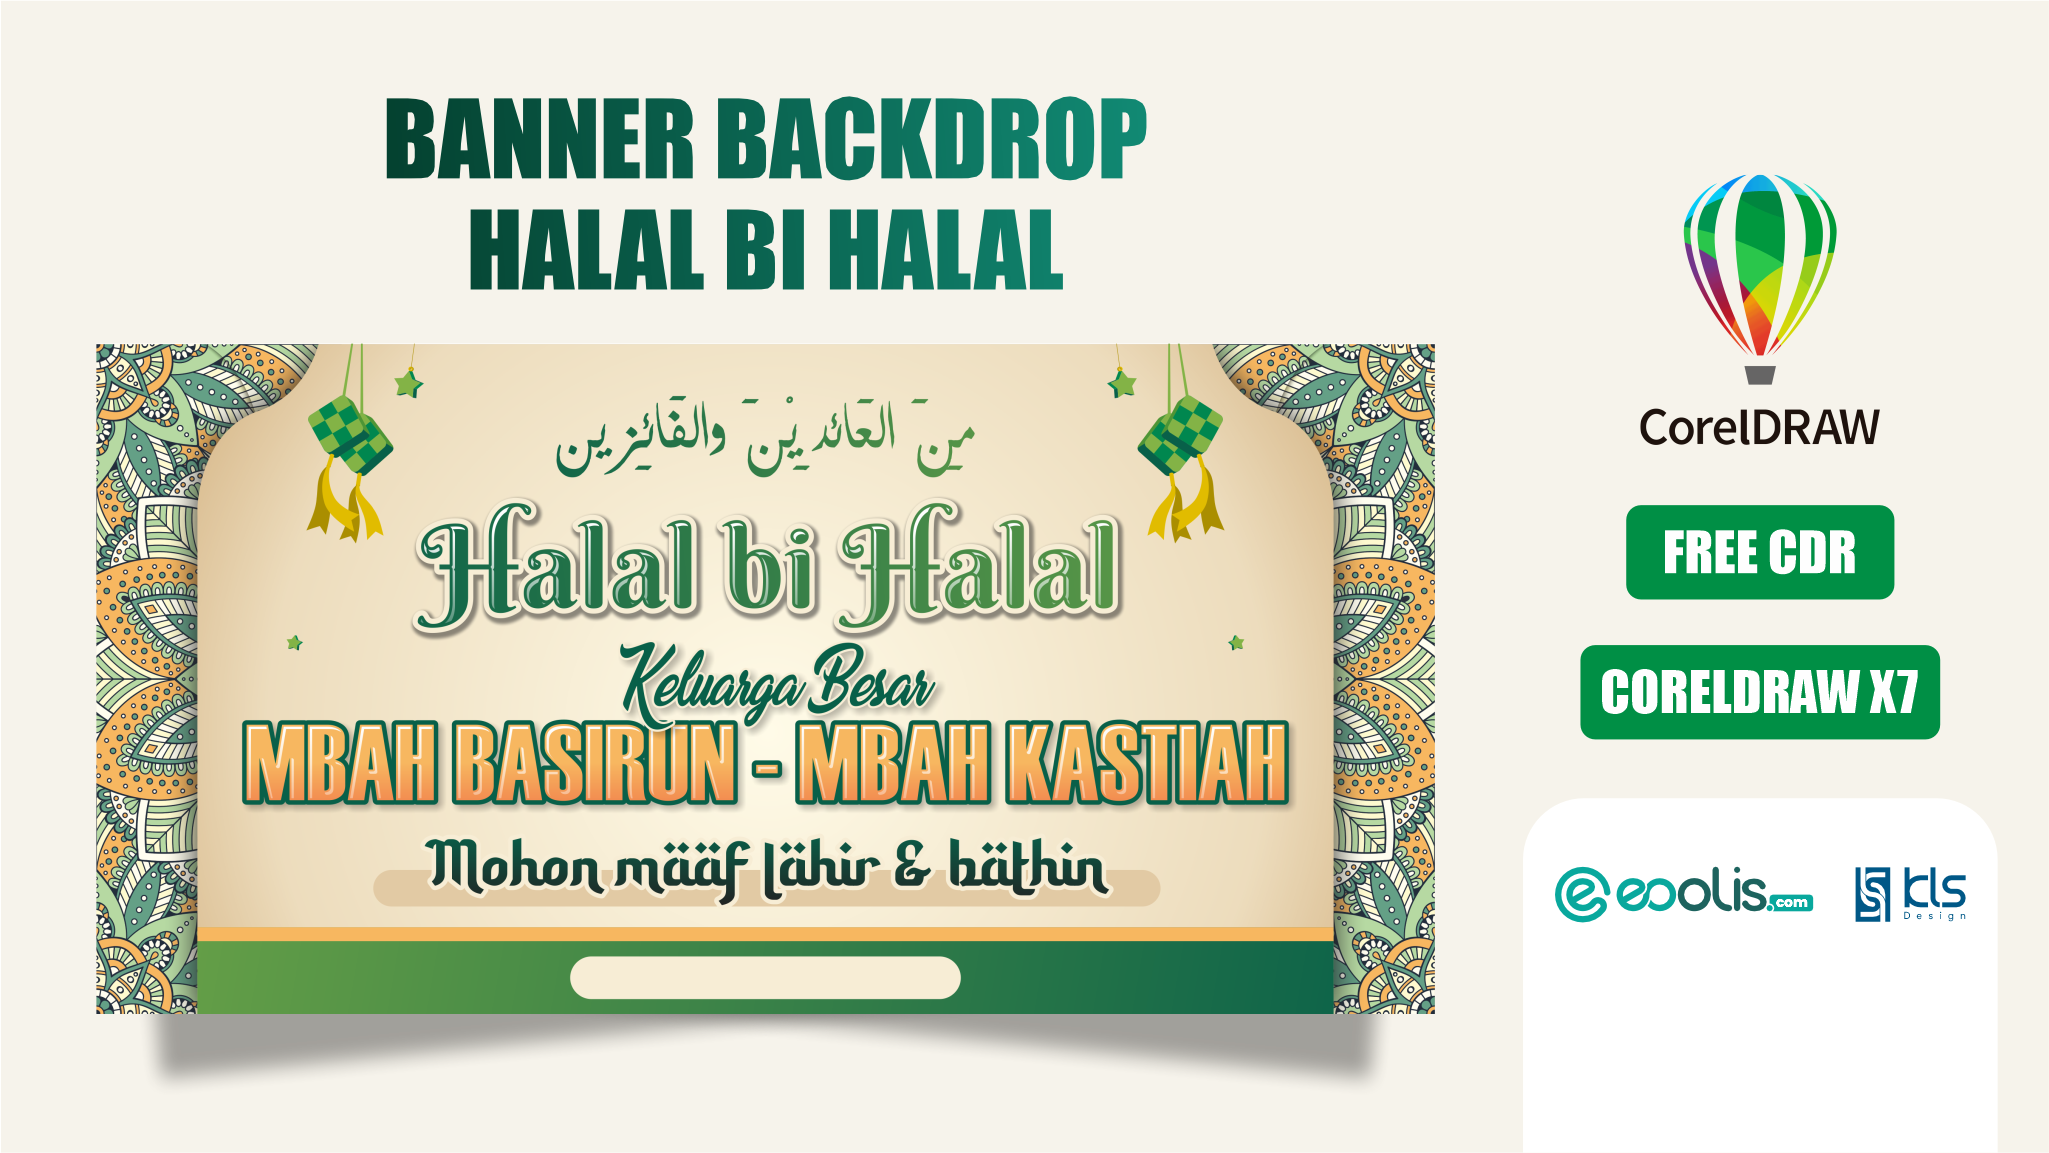 Desain Banner Backdrop Halal bi Halal - eoolis.com